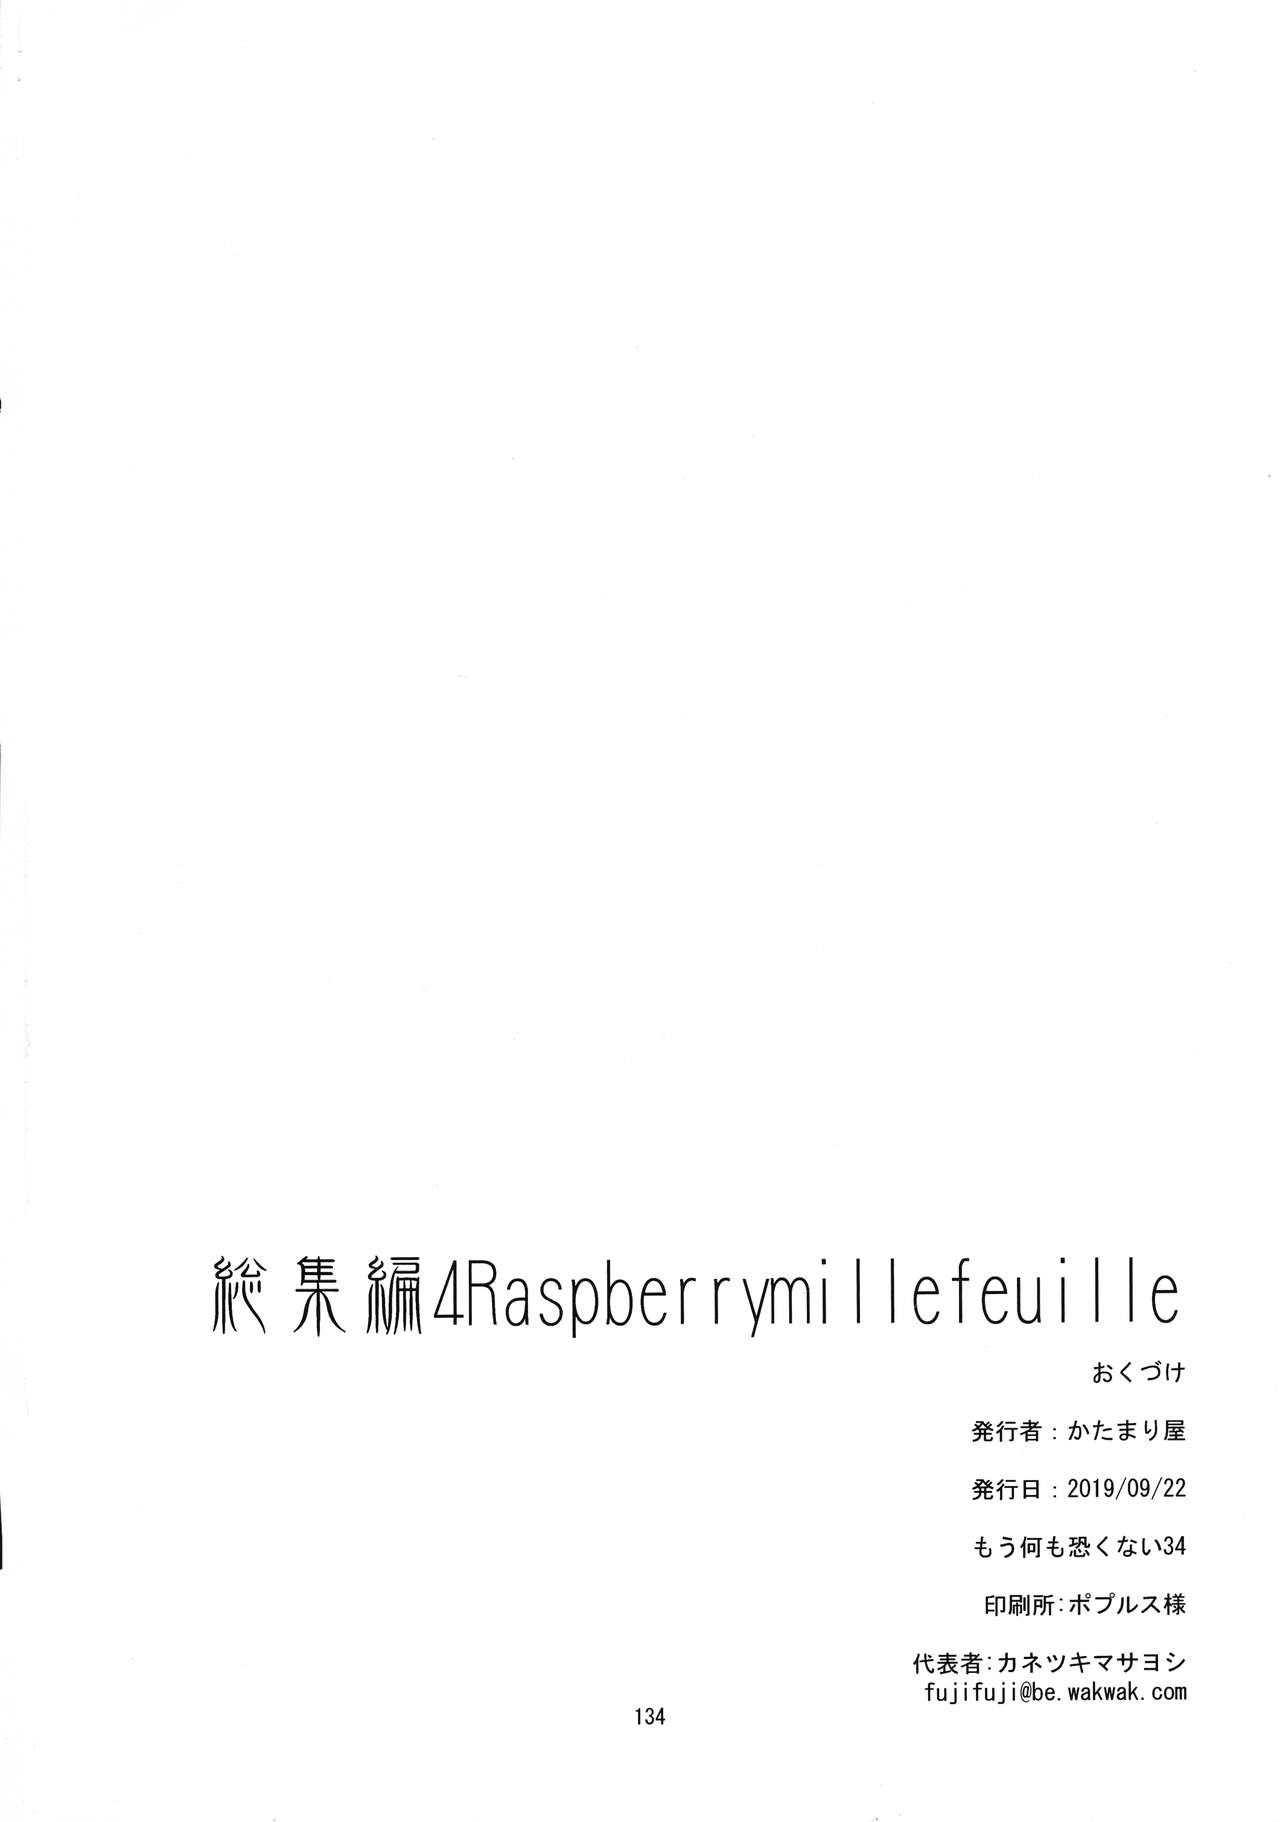 (もう何も恐くない 34) [かたまり屋 (しなま)] Raspberry millefeuille (魔法少女まどか☆マギカ)